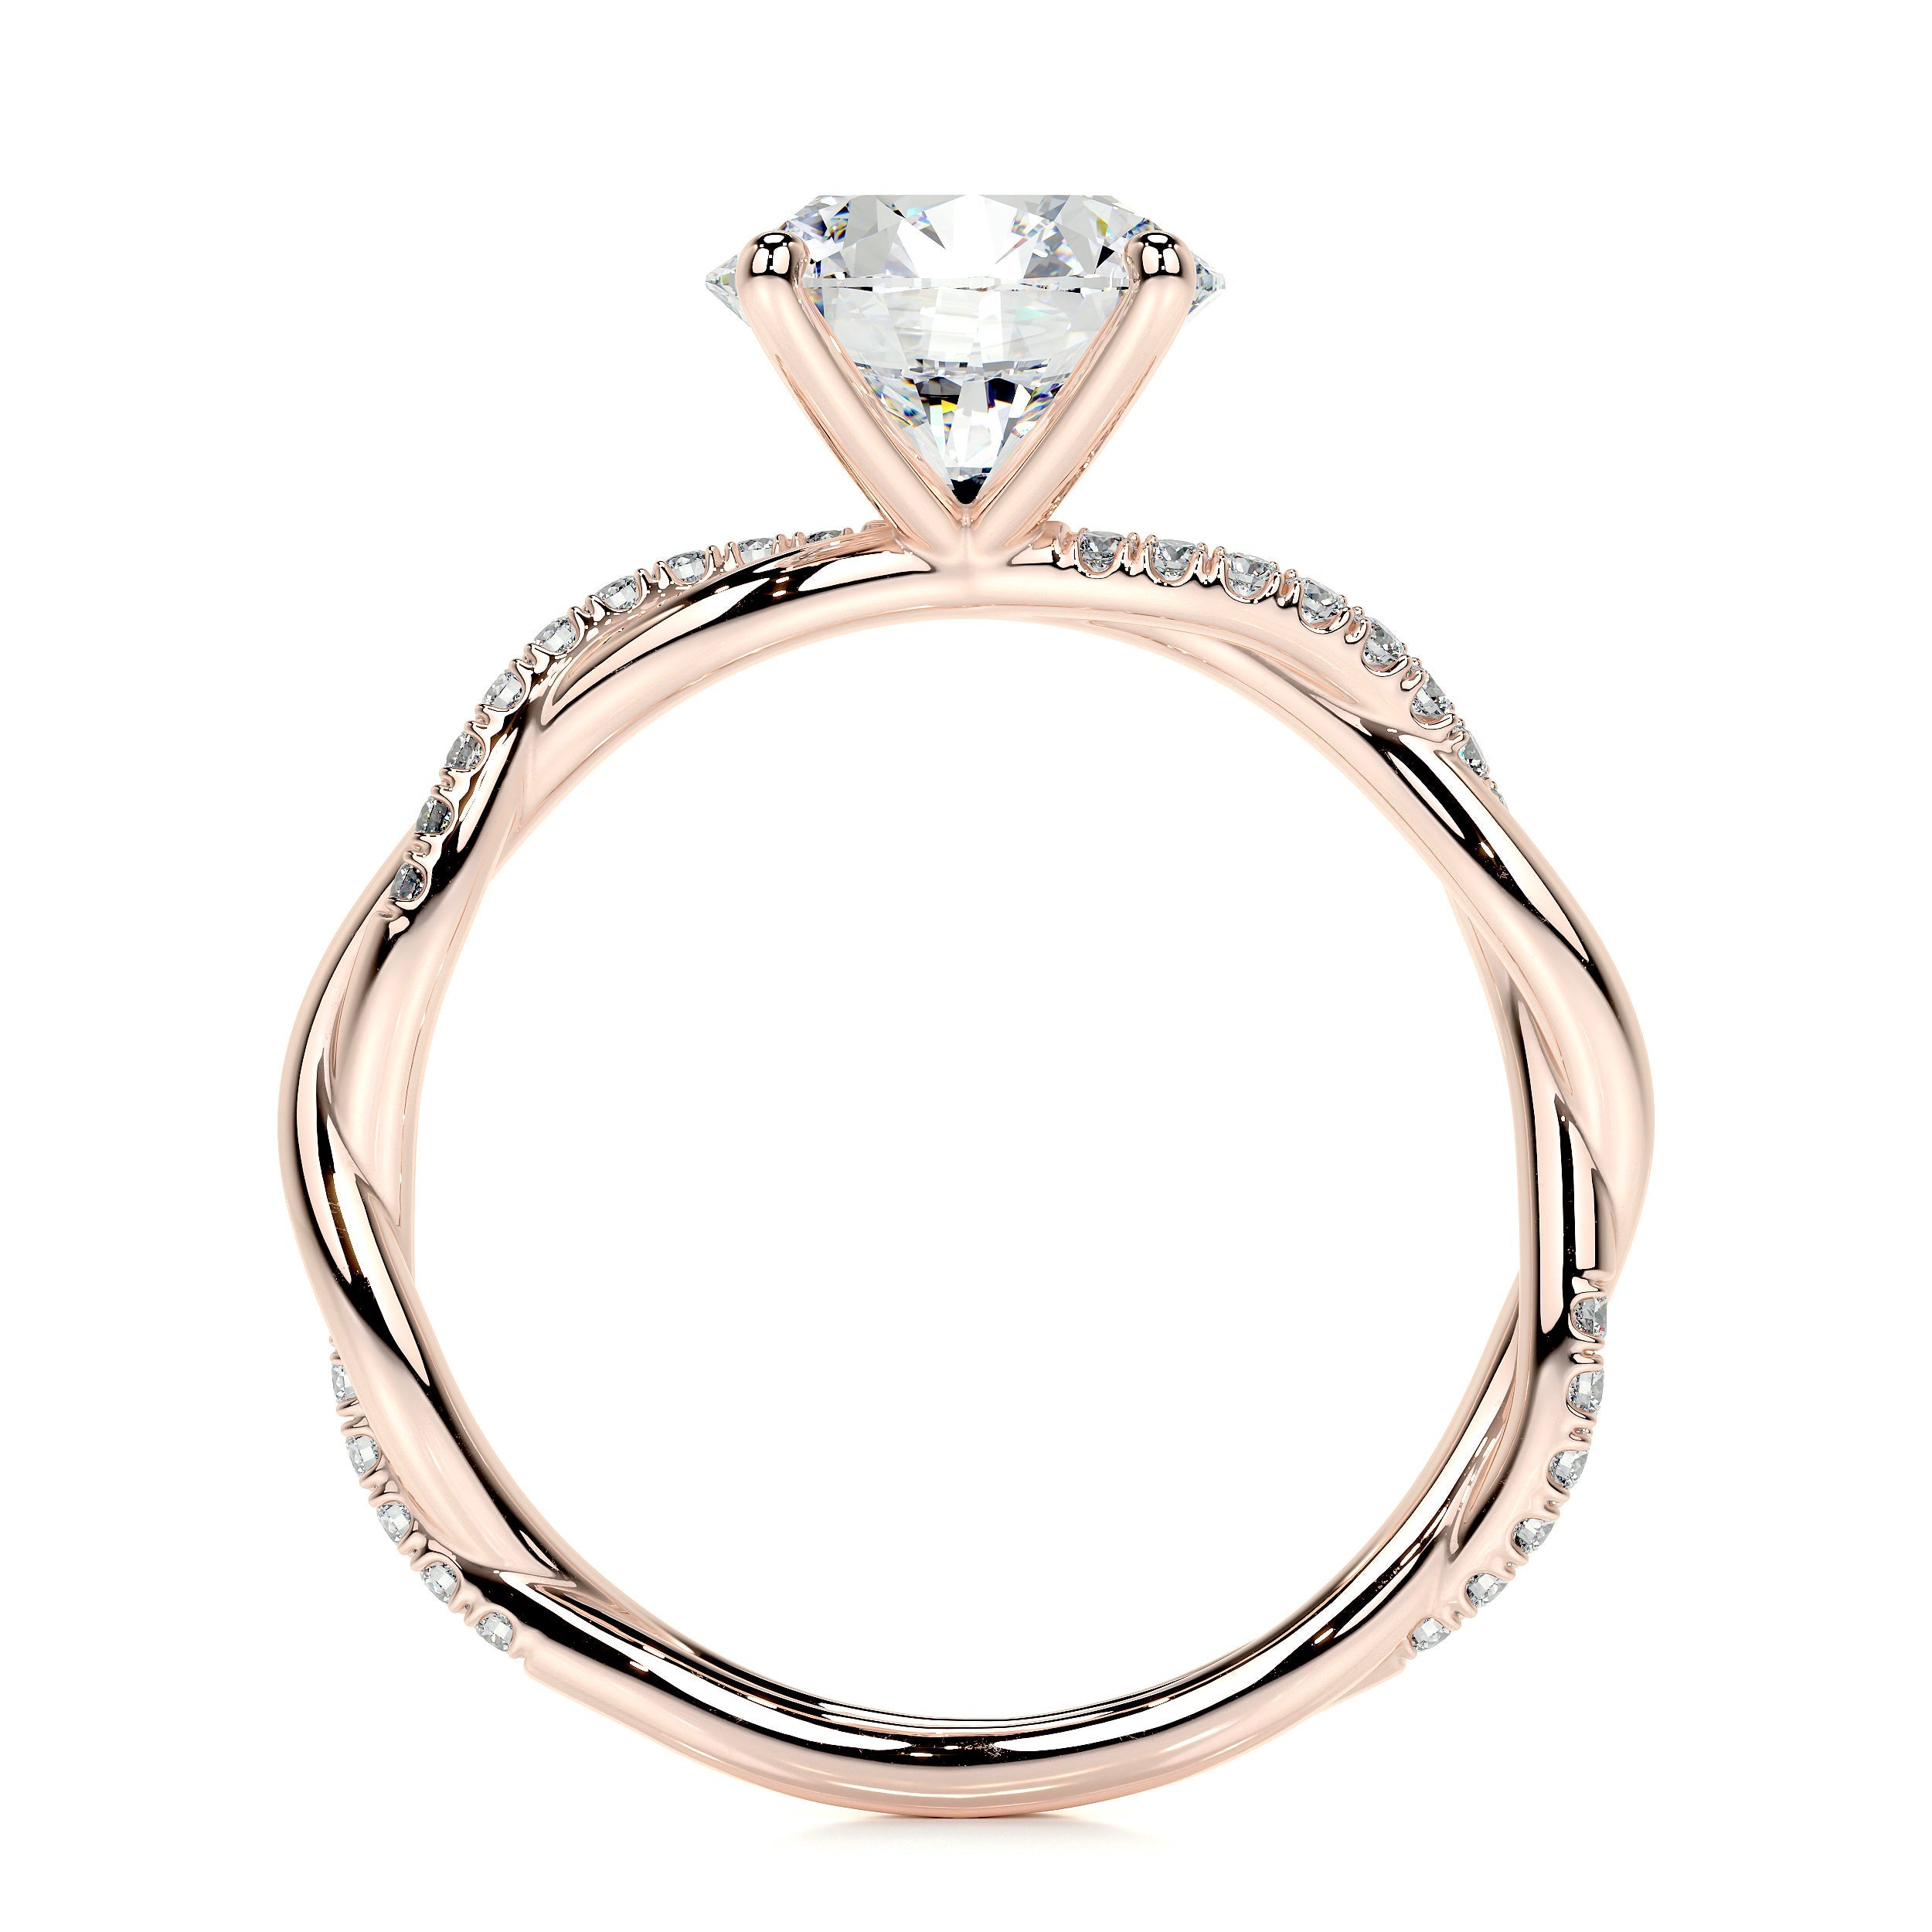 Crystal Lab Grown Diamond Ring   (1.8 Carat) -14K Rose Gold